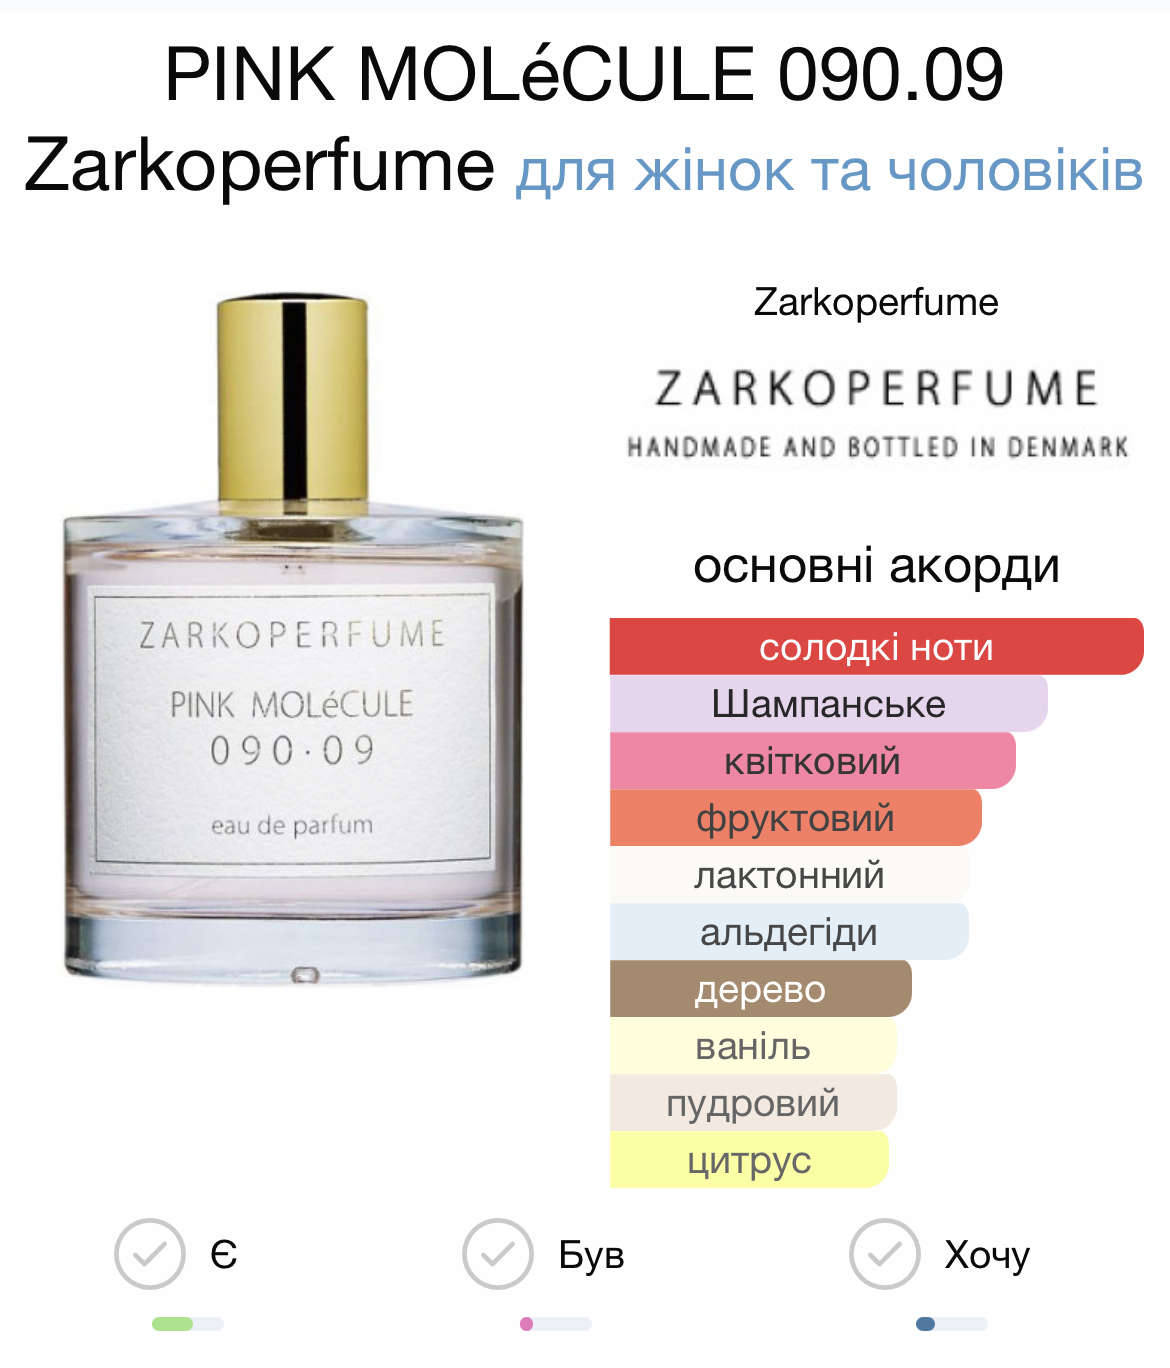 Zarkoperfume Pink Molécule 090.09